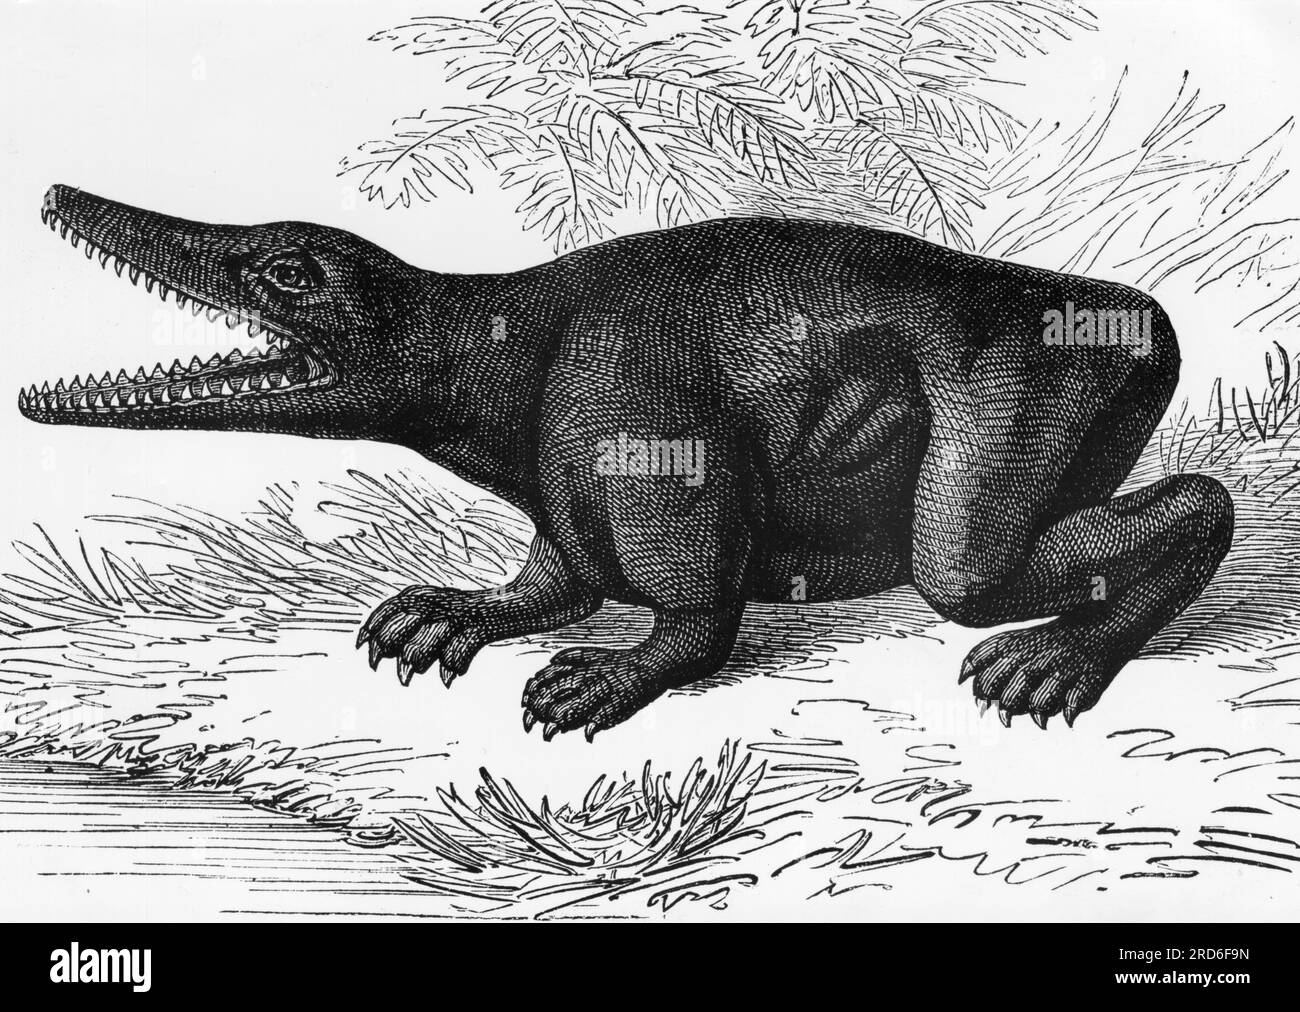 zoologie / animaux, dinosaure, labyrinthe (labyrinthodontie), dessin, 20e siècle, INFORMATIONS-AUTORISATION-DROITS-SUPPLÉMENTAIRES-NON-DISPONIBLES Banque D'Images